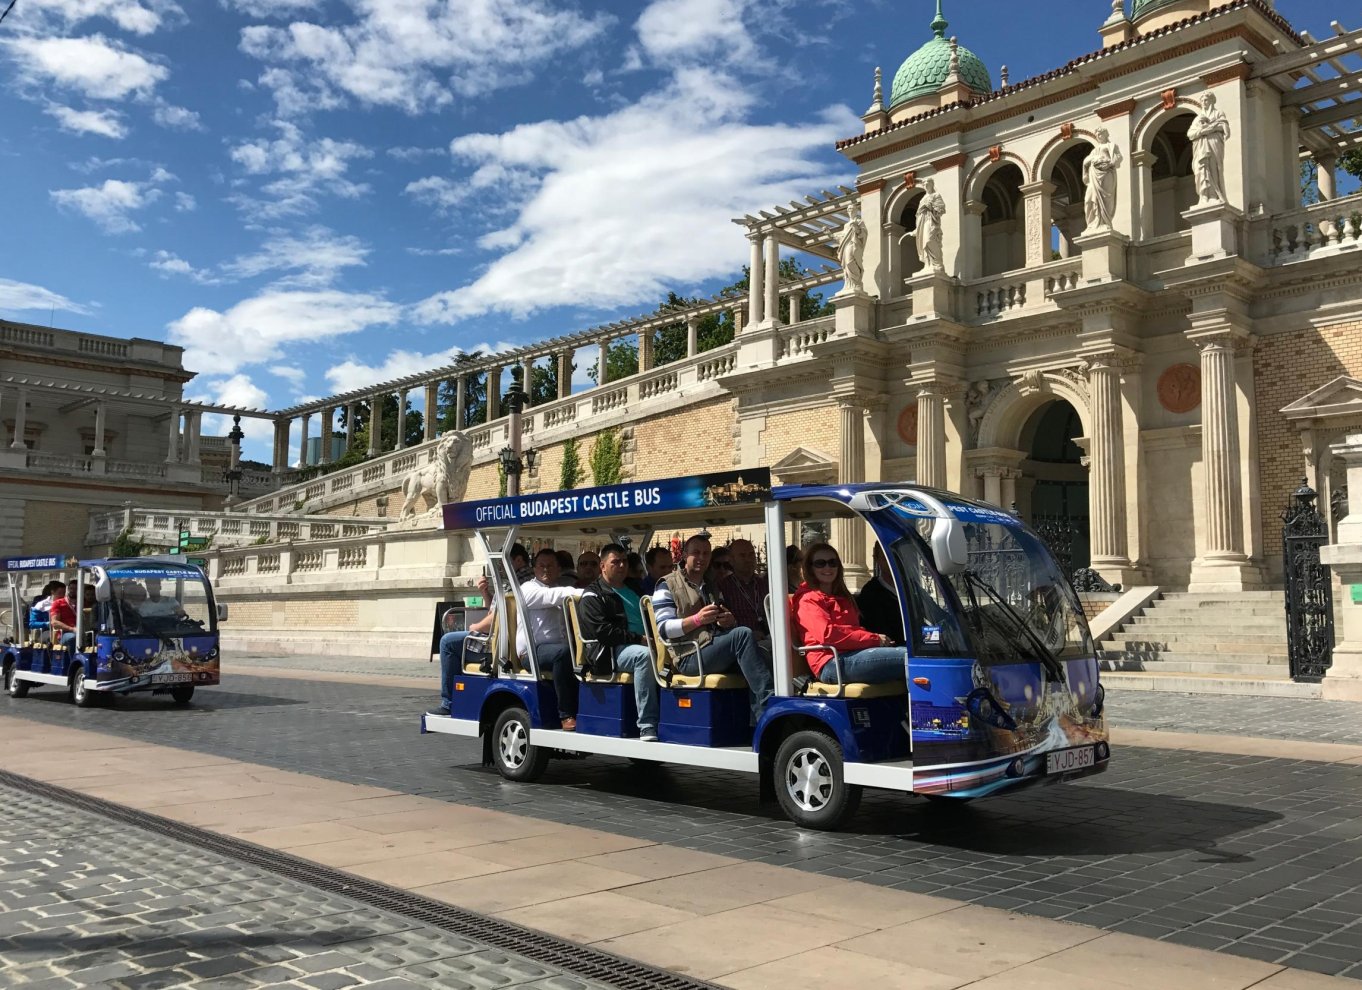 budapest castle bus tour